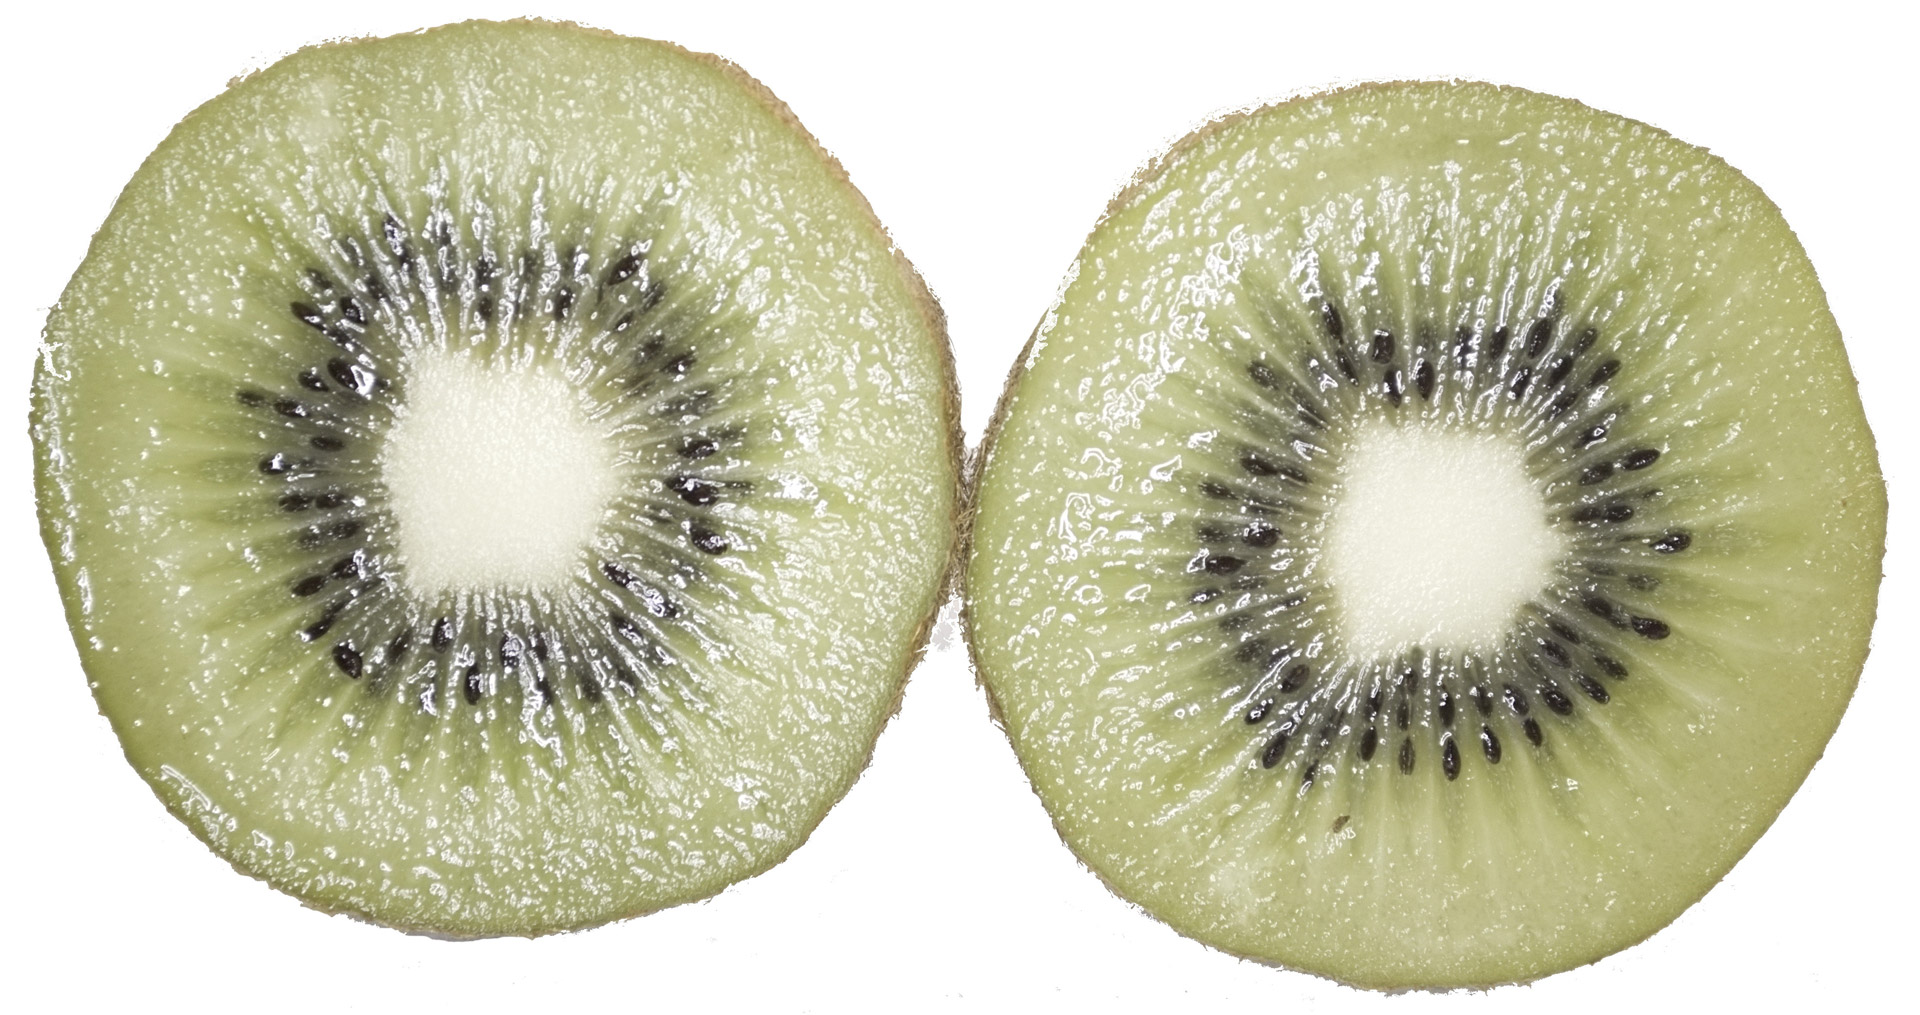 Download Kiwi Fruit Kiwi Free Photo.